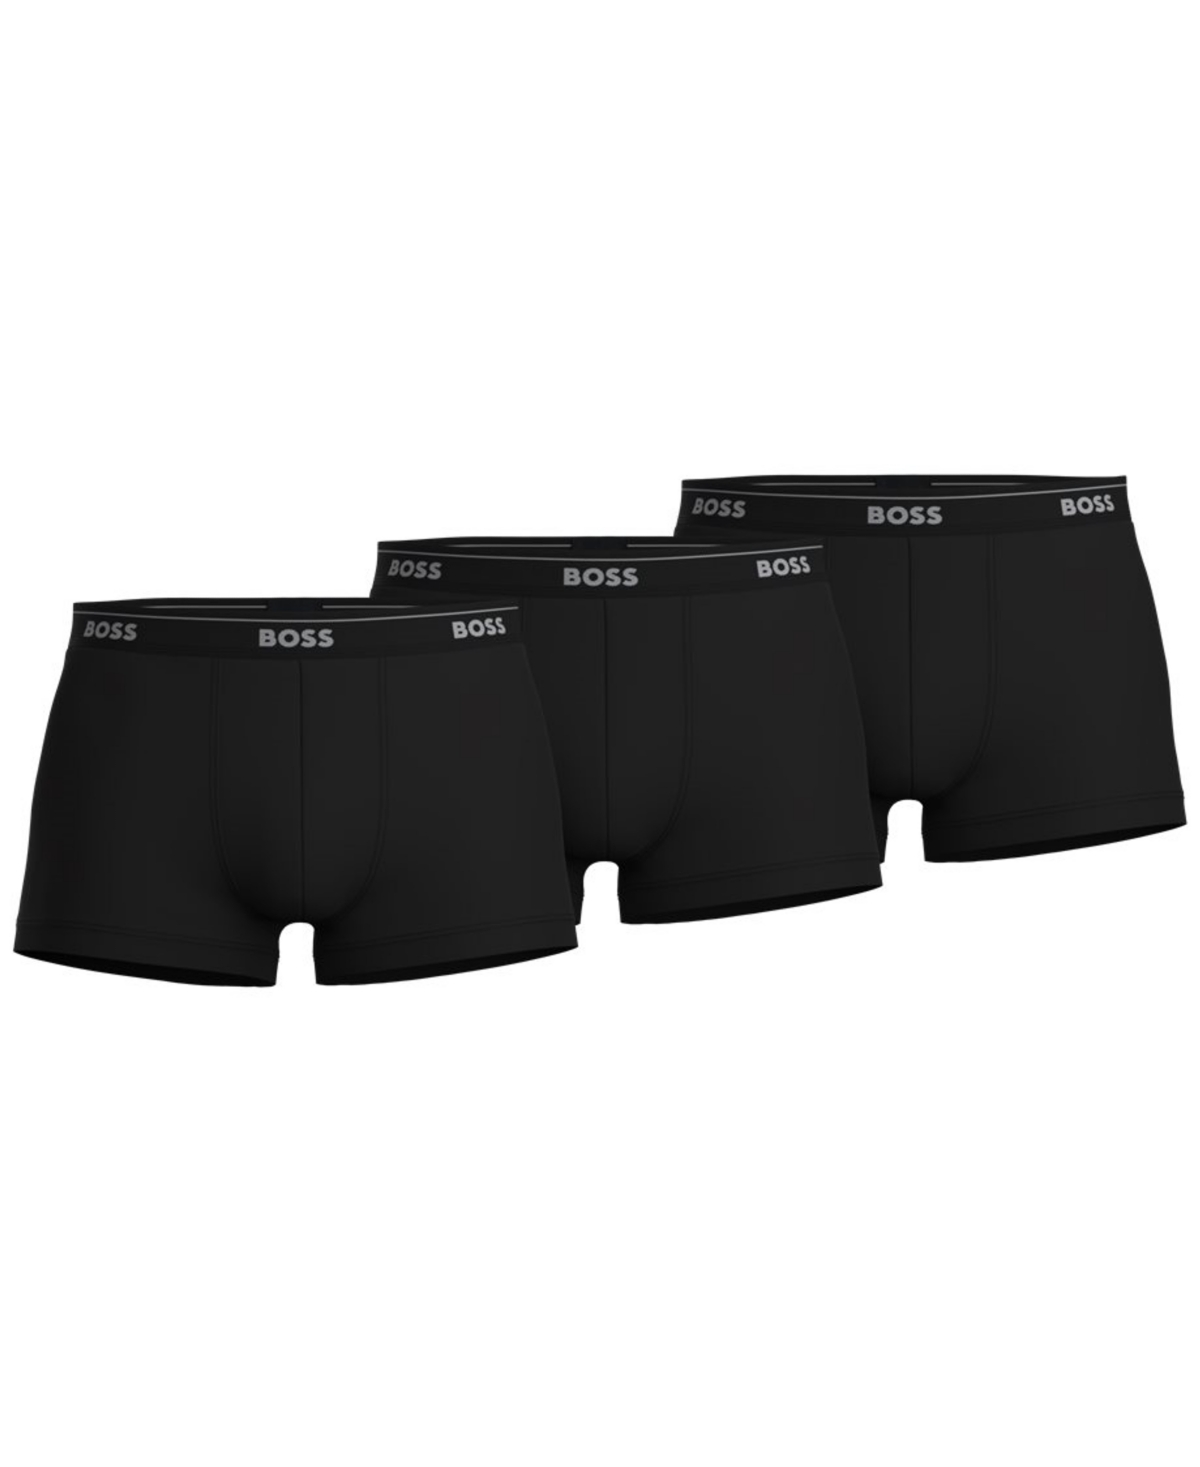 Boss by Hugo Boss Men's Classic 3-Pk. Cotton Trunk Underwear - Black